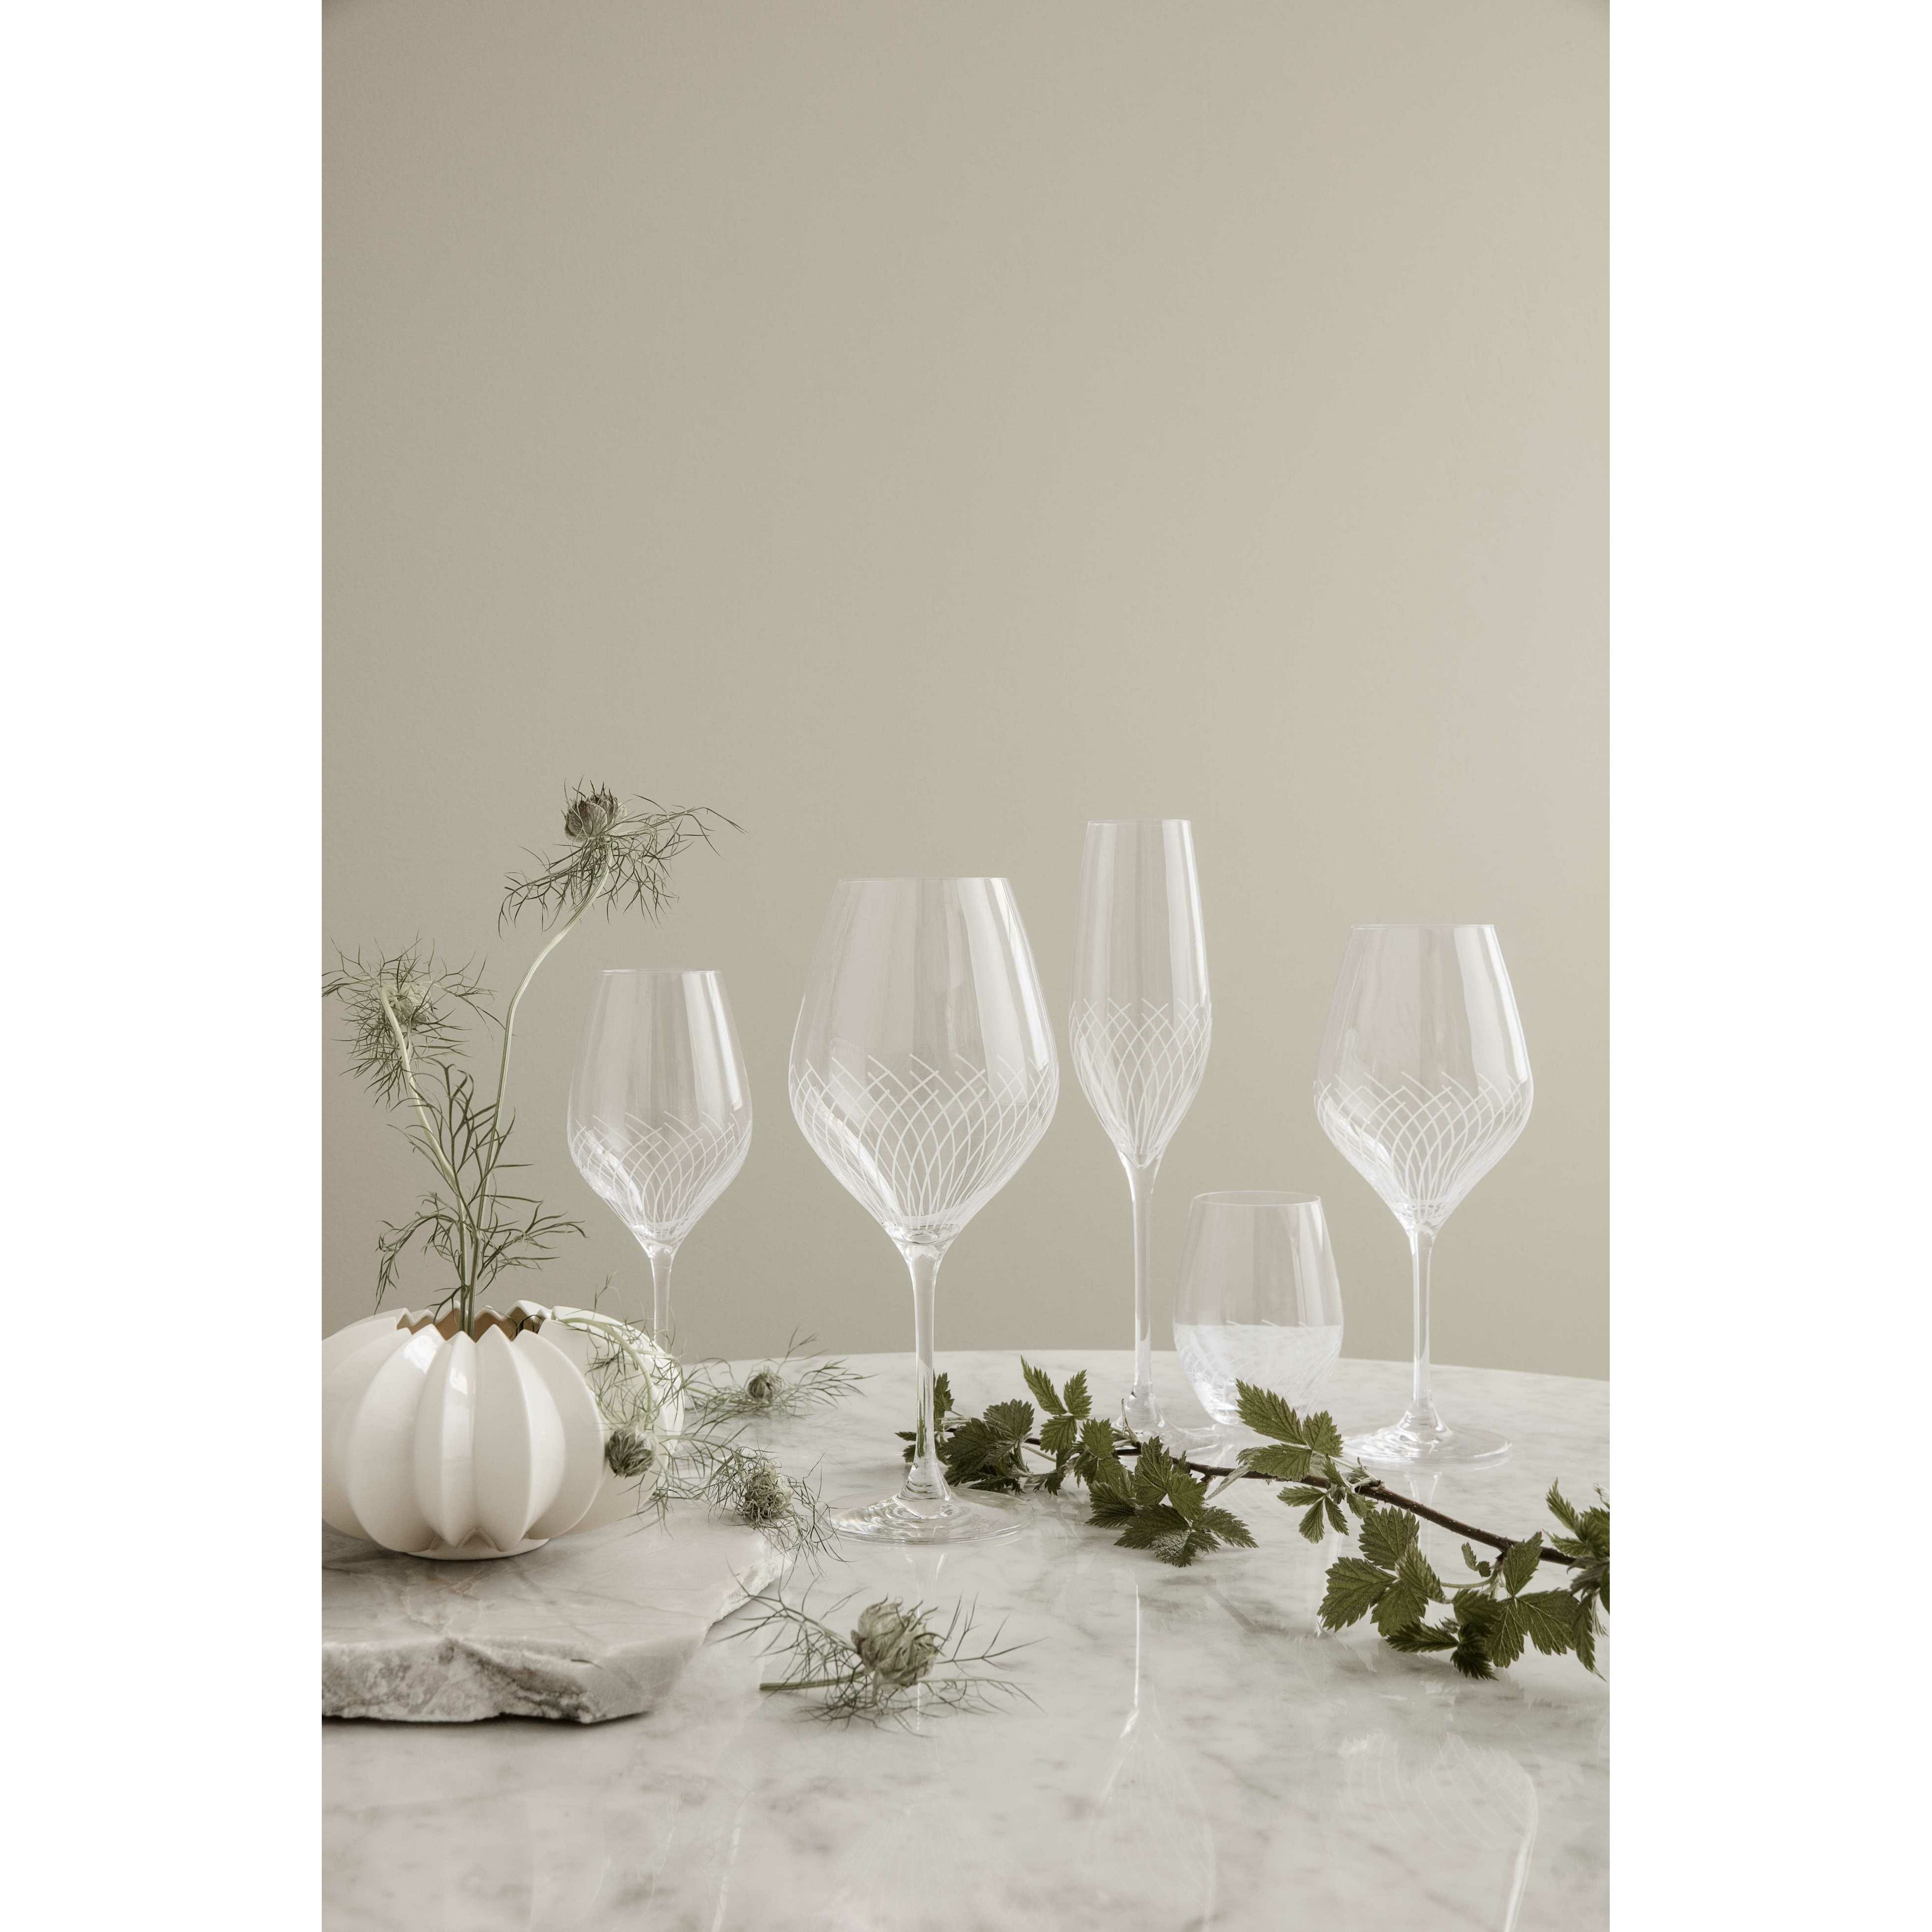 Holmegaard Cabernet linjer White Wine Glass, 2 stk.